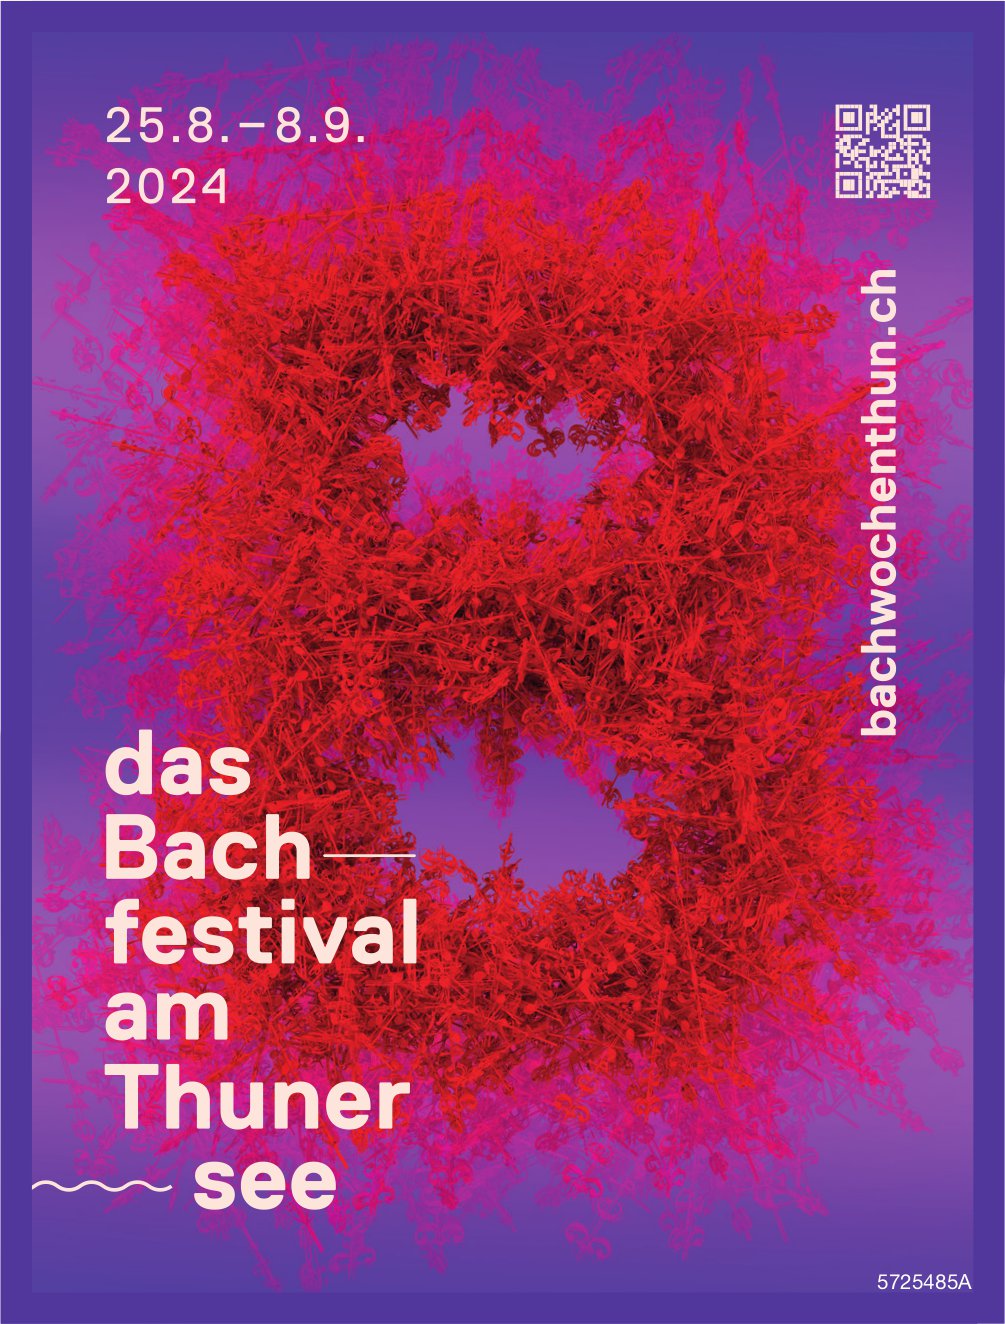 Das Bach-Festival am Thunersee, 28.8. - 8.9.2024